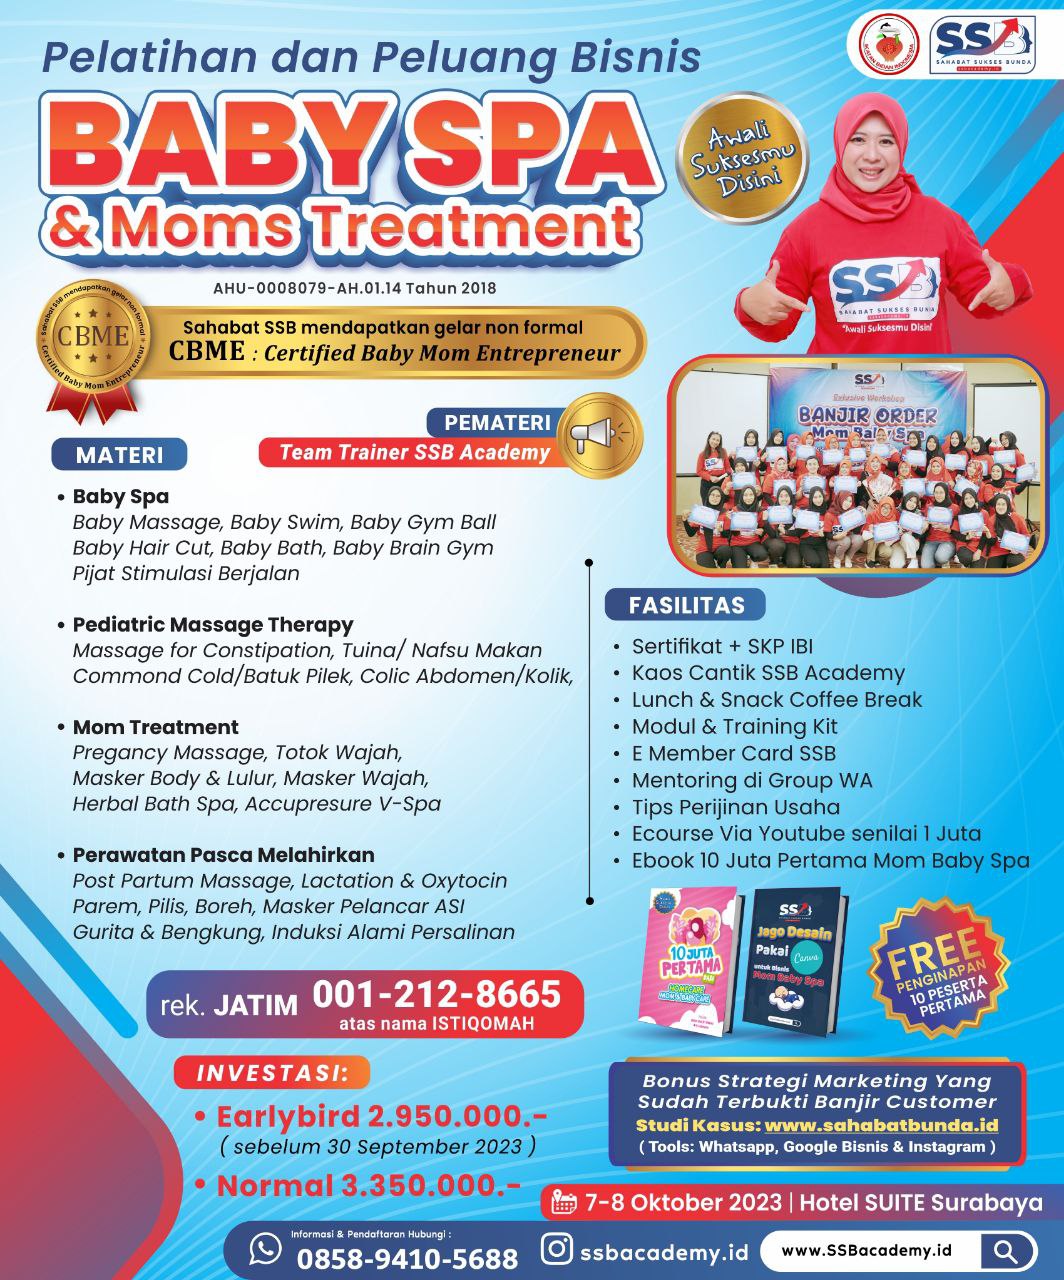 Pelatihan Baby Spa Bersertifikat di Buton Tengah Bersertifikat CBME ( Certified Baby Moms Entrepreneur )